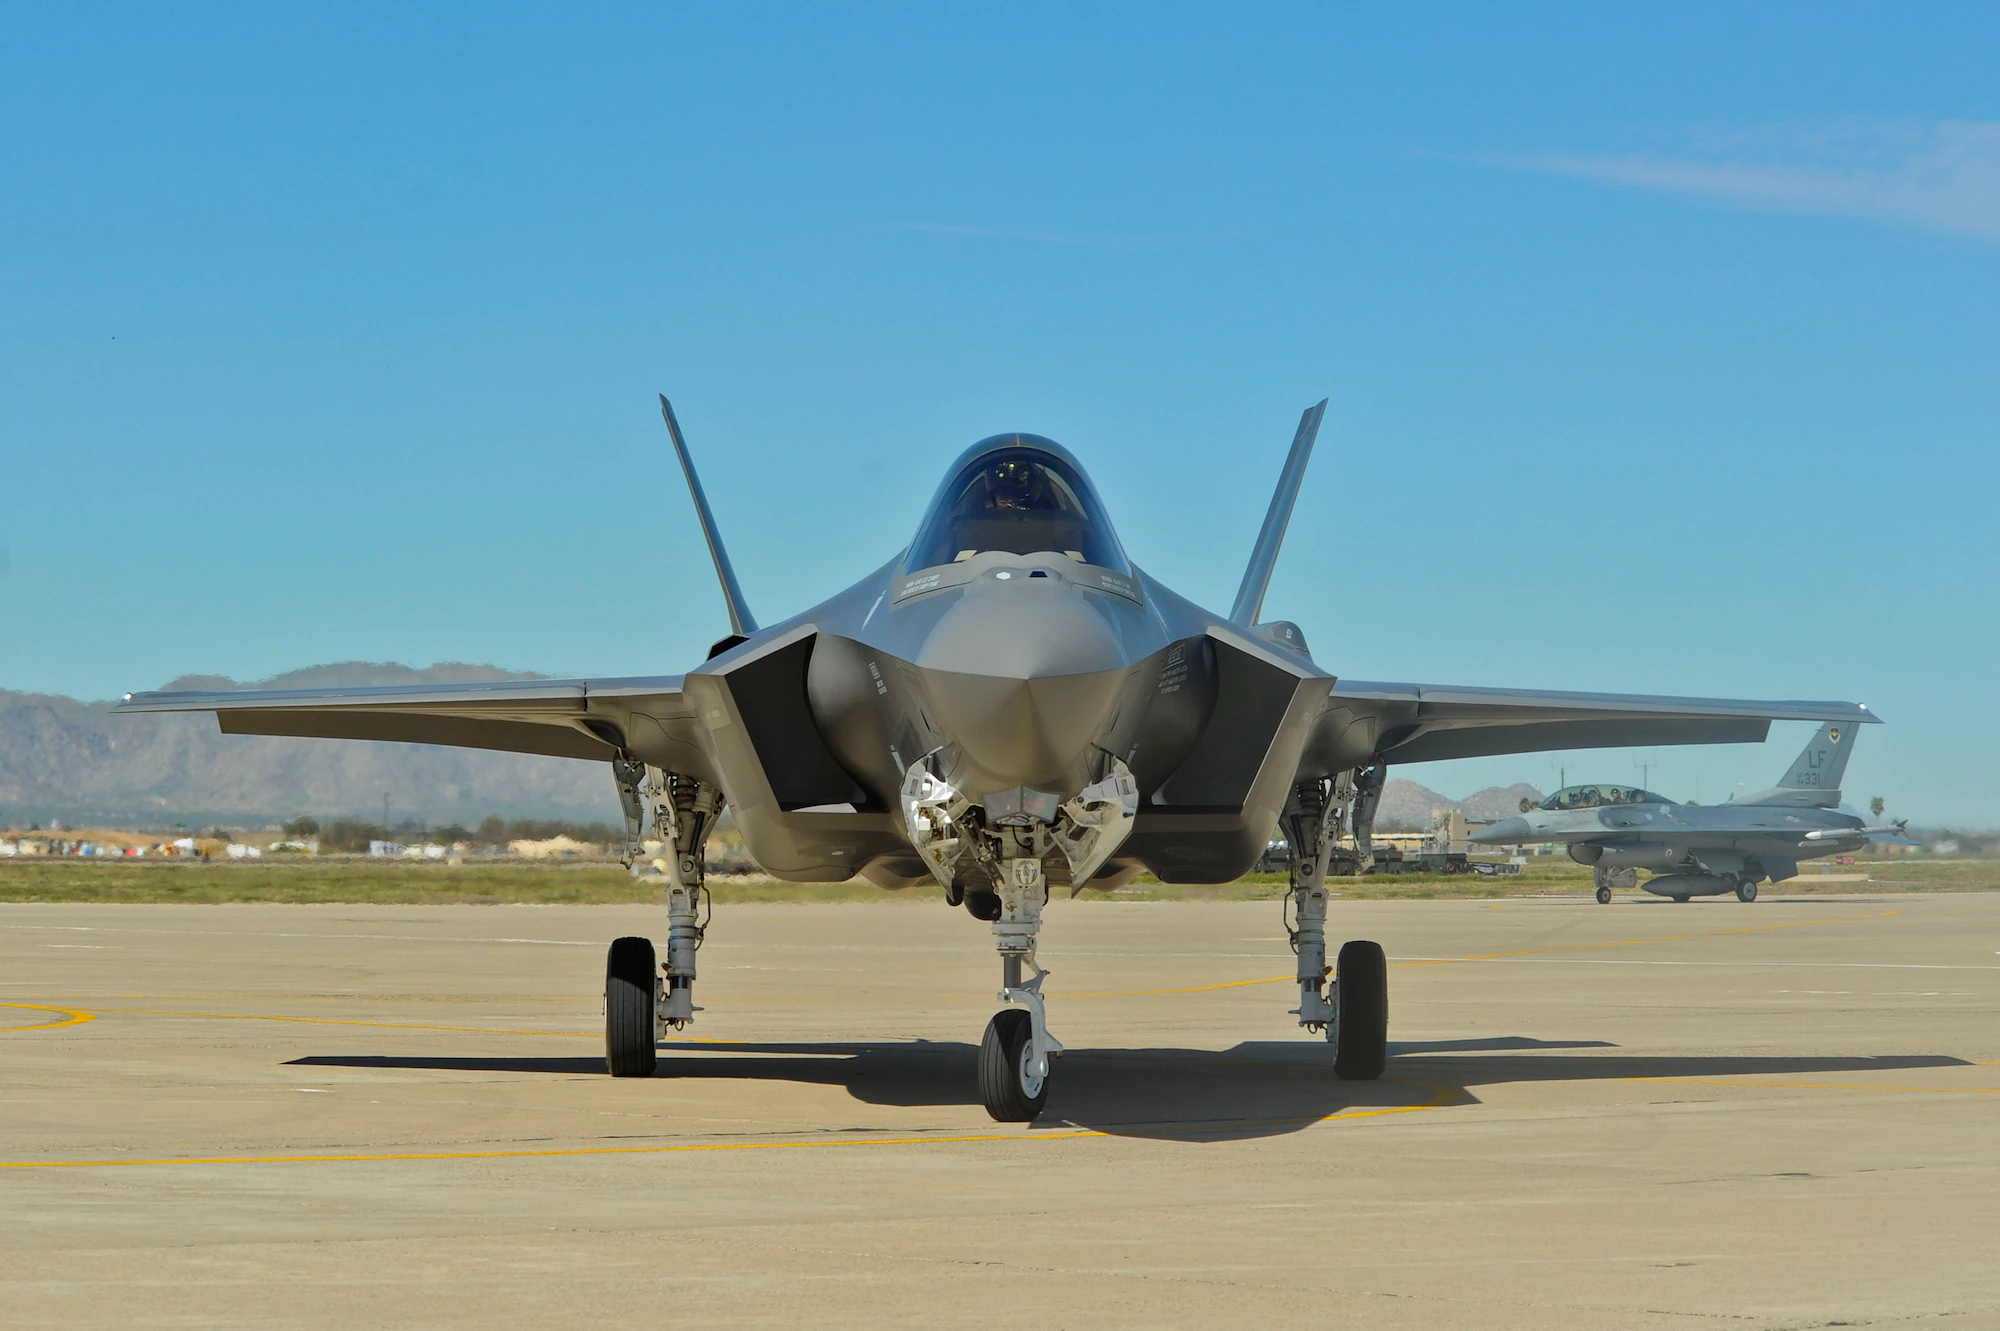 General Electric rozpoczyna prace projektowe nad produkcyjną wersją silnika adaptacyjnego XA100 dla myśliwca F-35